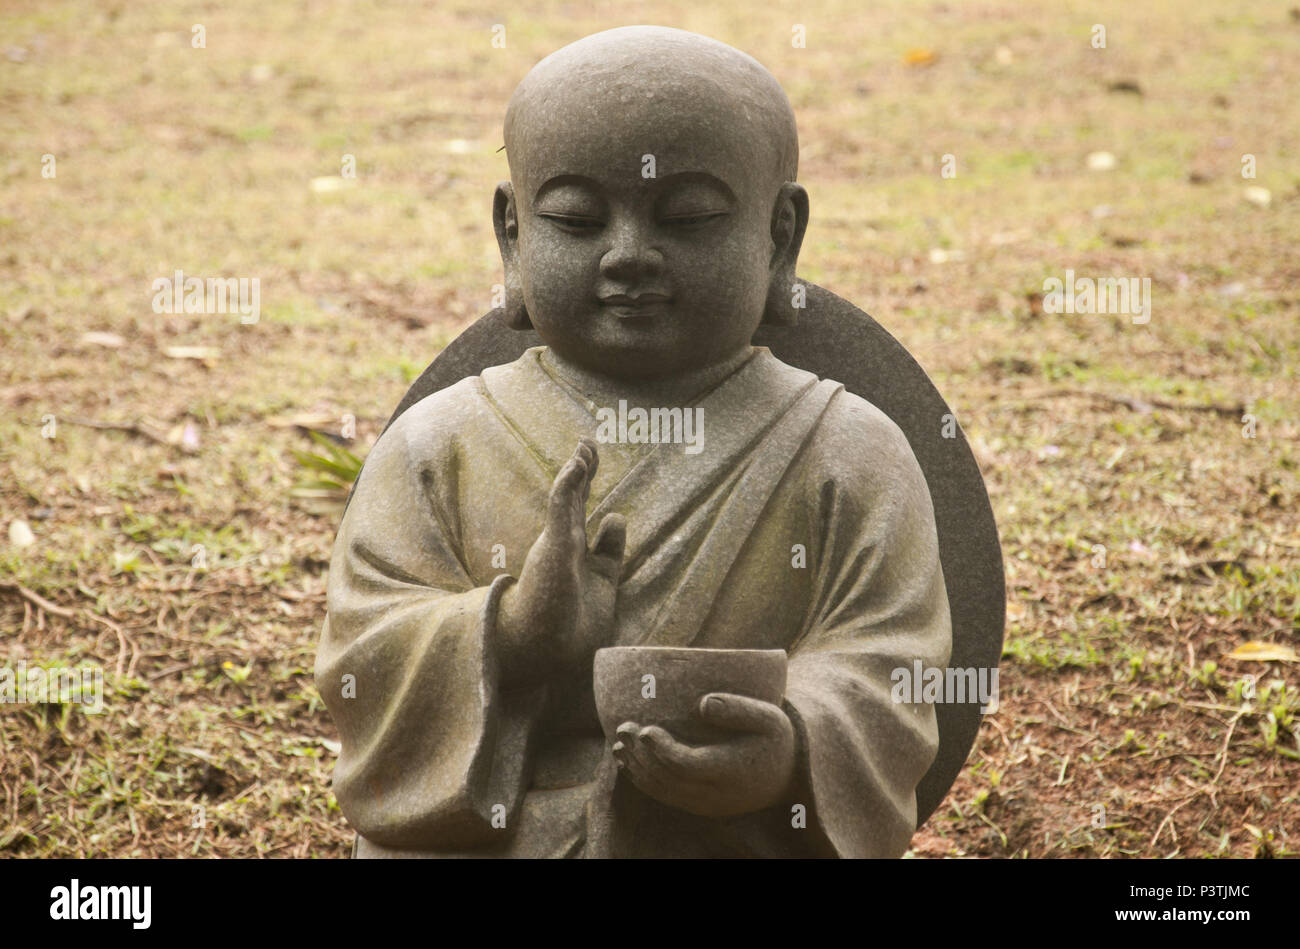 COTIA, SP - 21.02.2016: TEMPLO ZU LAI - Estátuas de BUda crinça no jardim de entrada do templo budista Zu Lai. (Foto: Daniela Maria / Fotoarena) Stock Photo